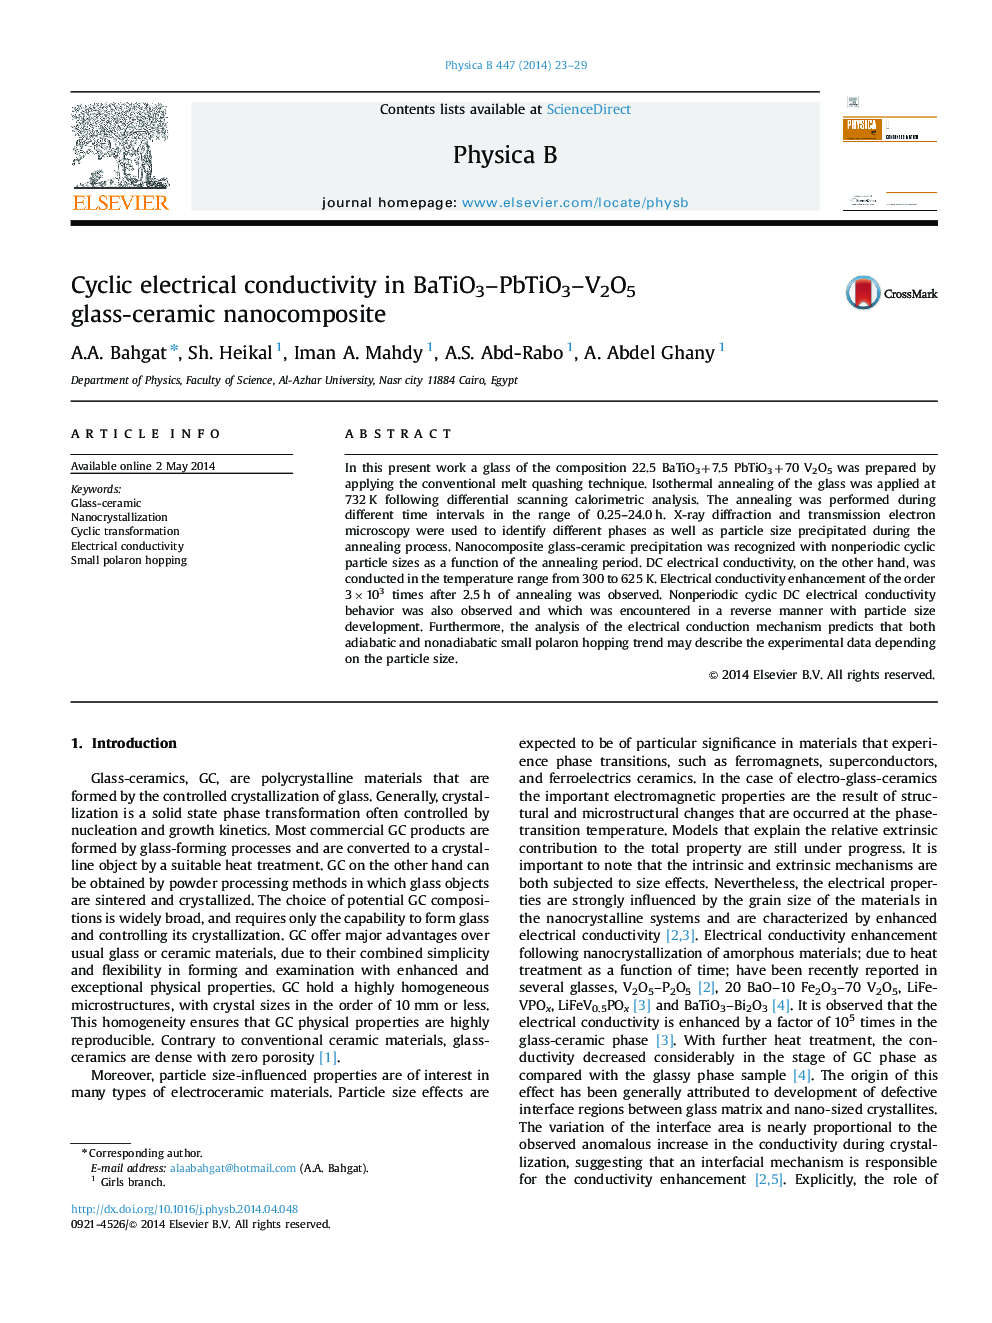 Cyclic electrical conductivity in BaTiO3–PbTiO3–V2O5 glass-ceramic nanocomposite